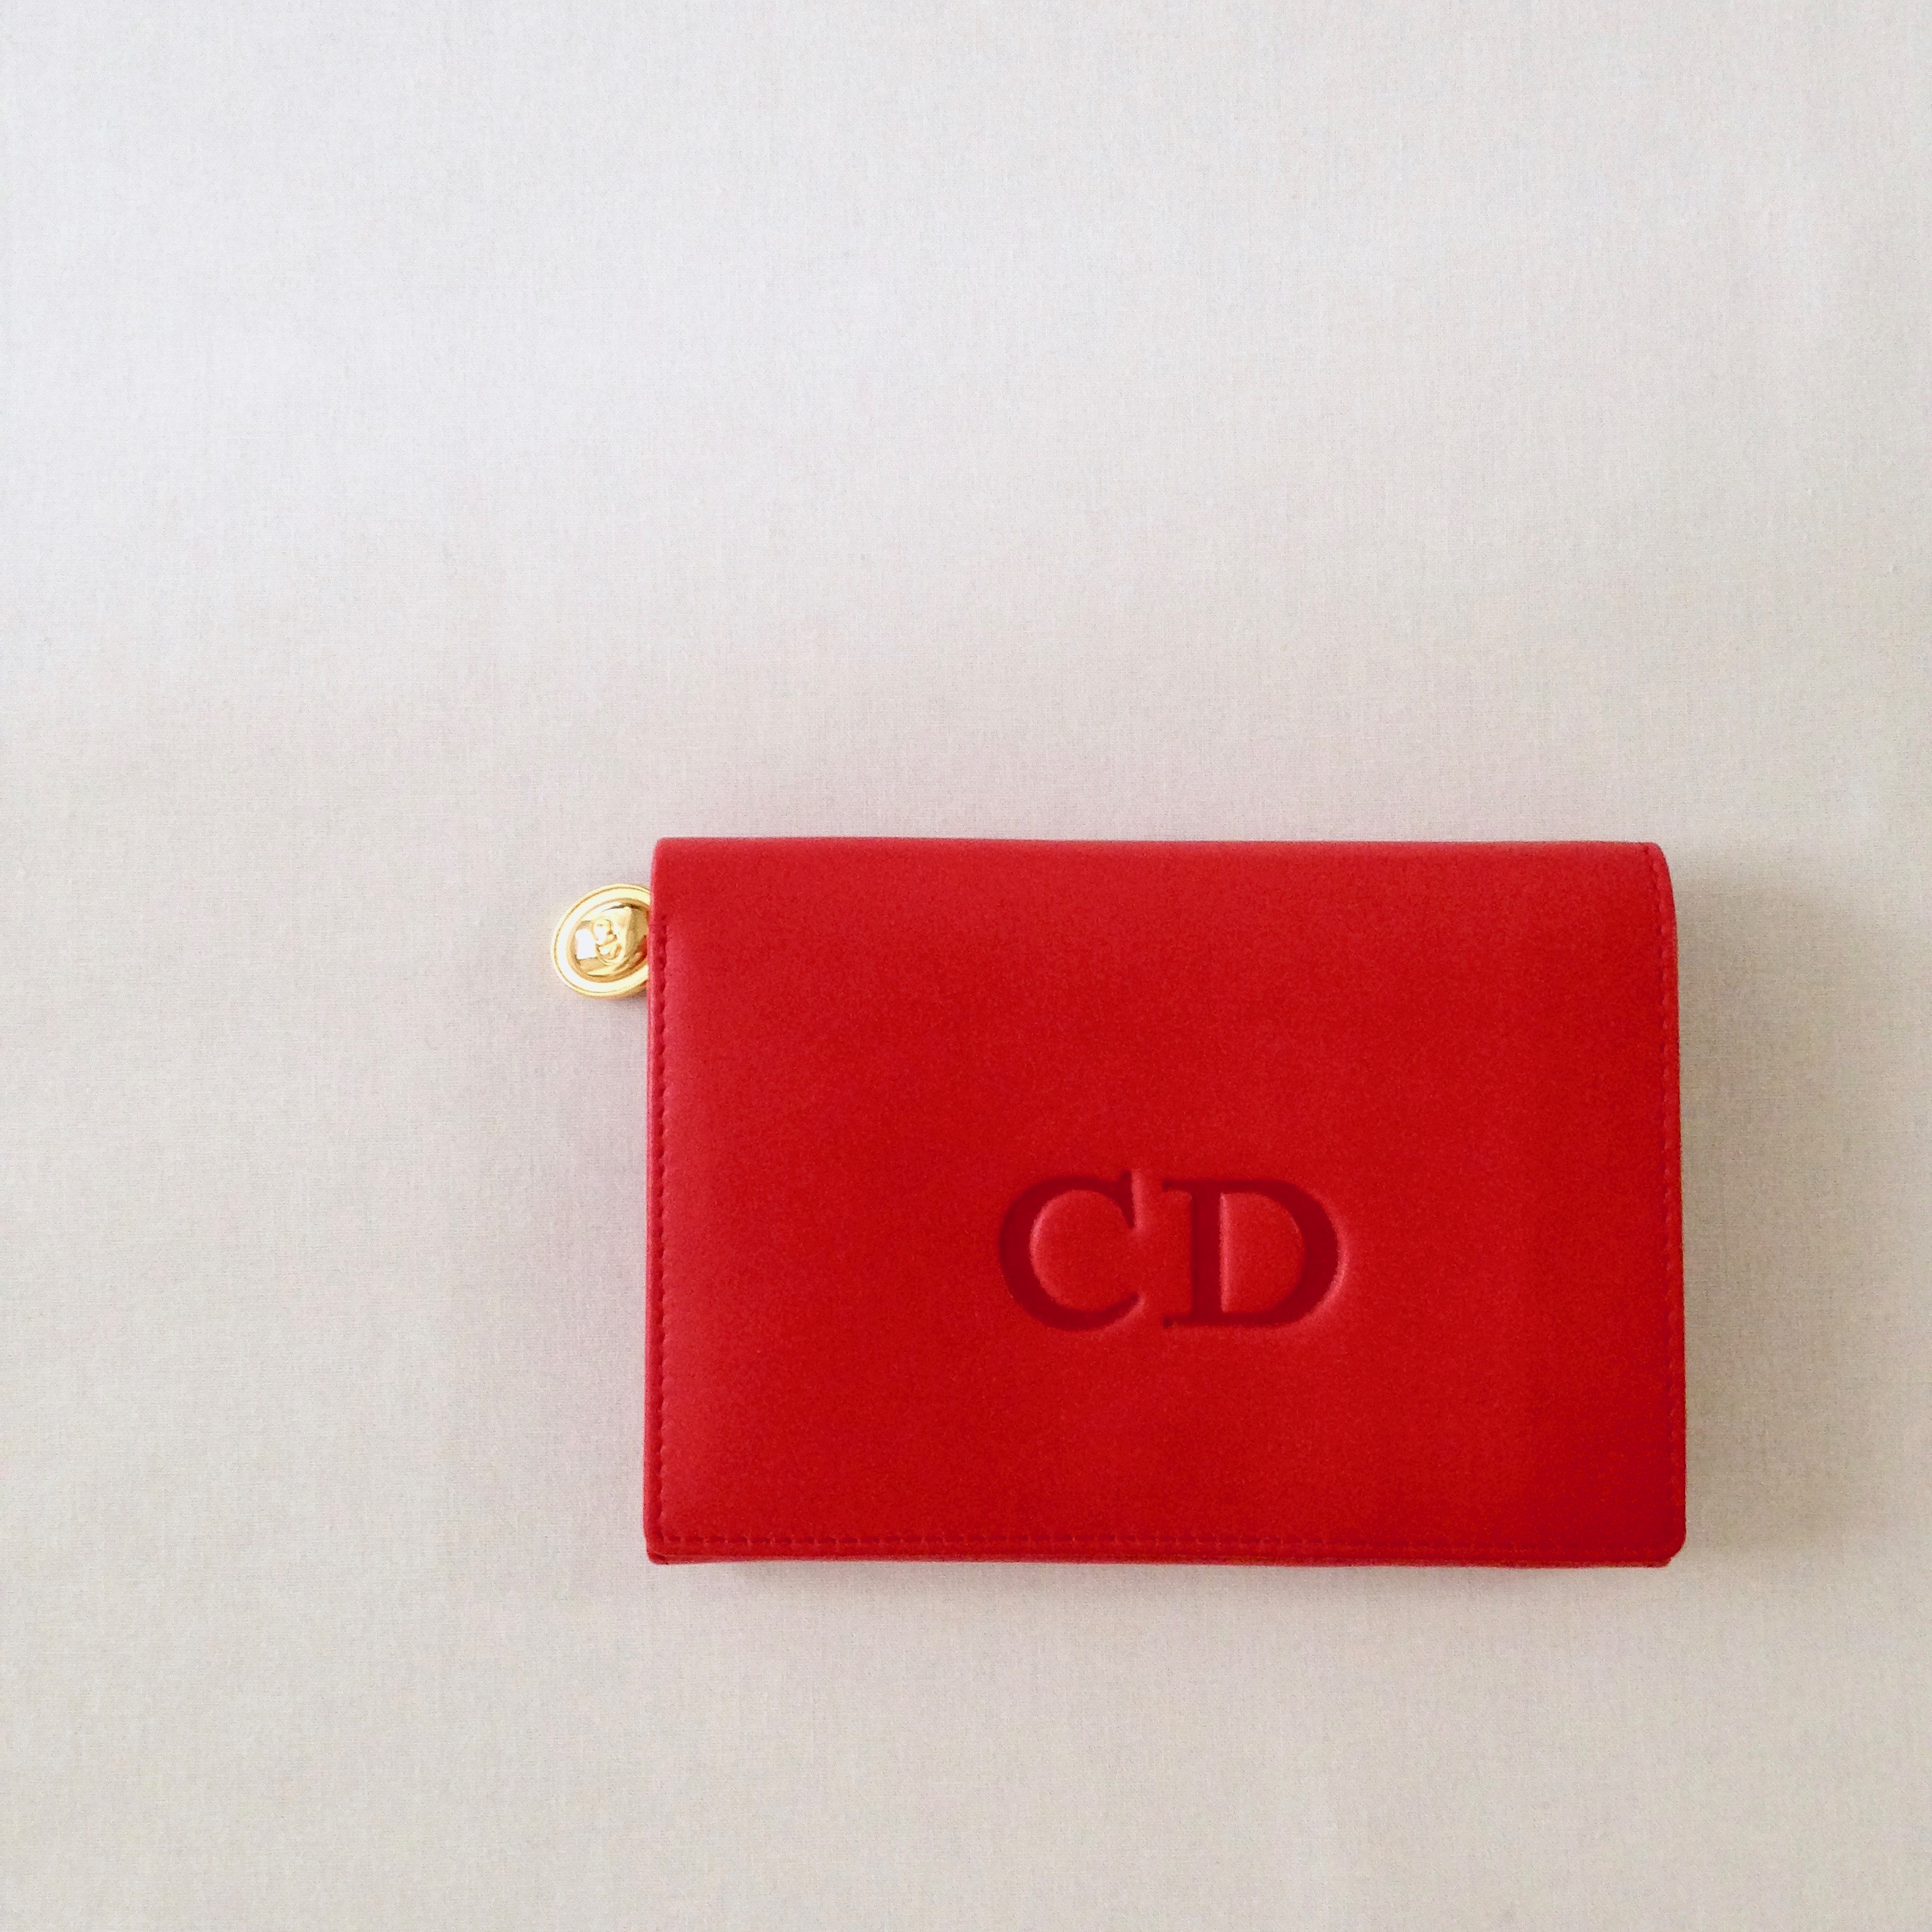 バイカラーがかわいい(*´-`) Christian Dior のお財布☆   